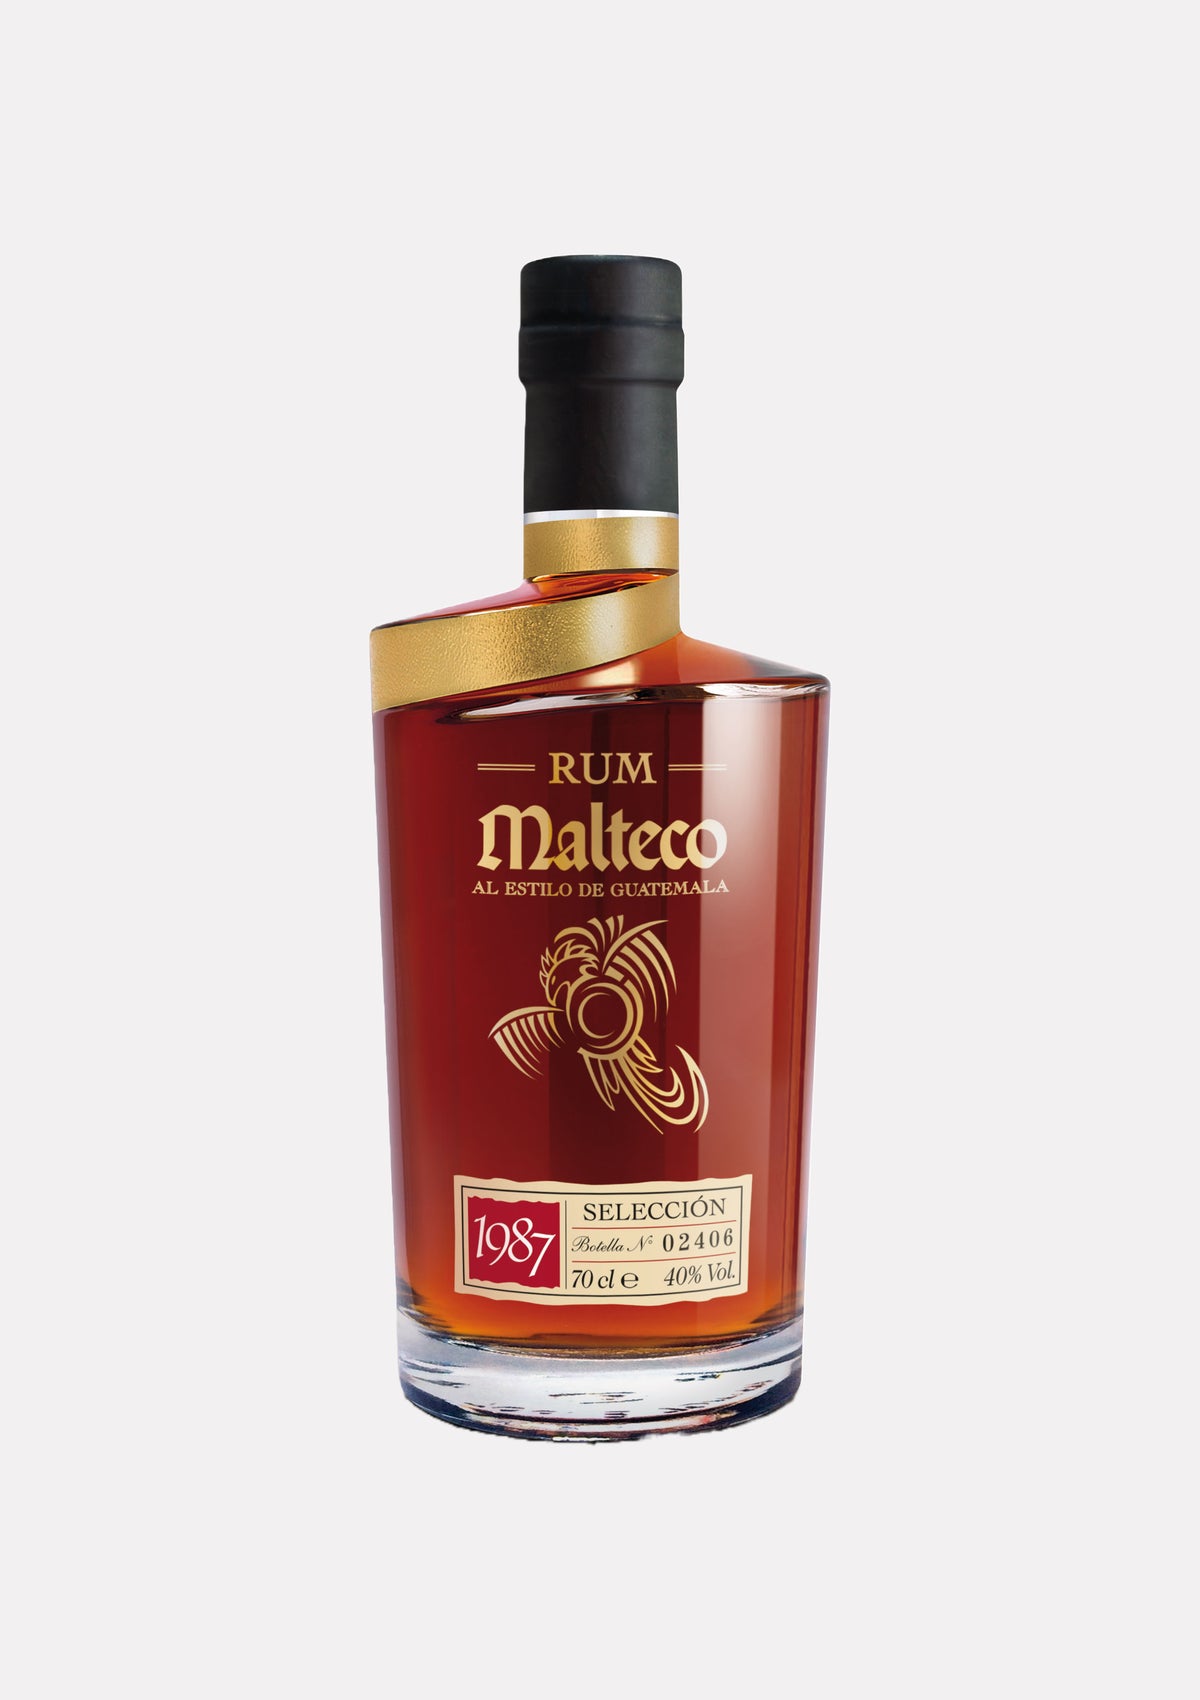 Rum Malteco 1987